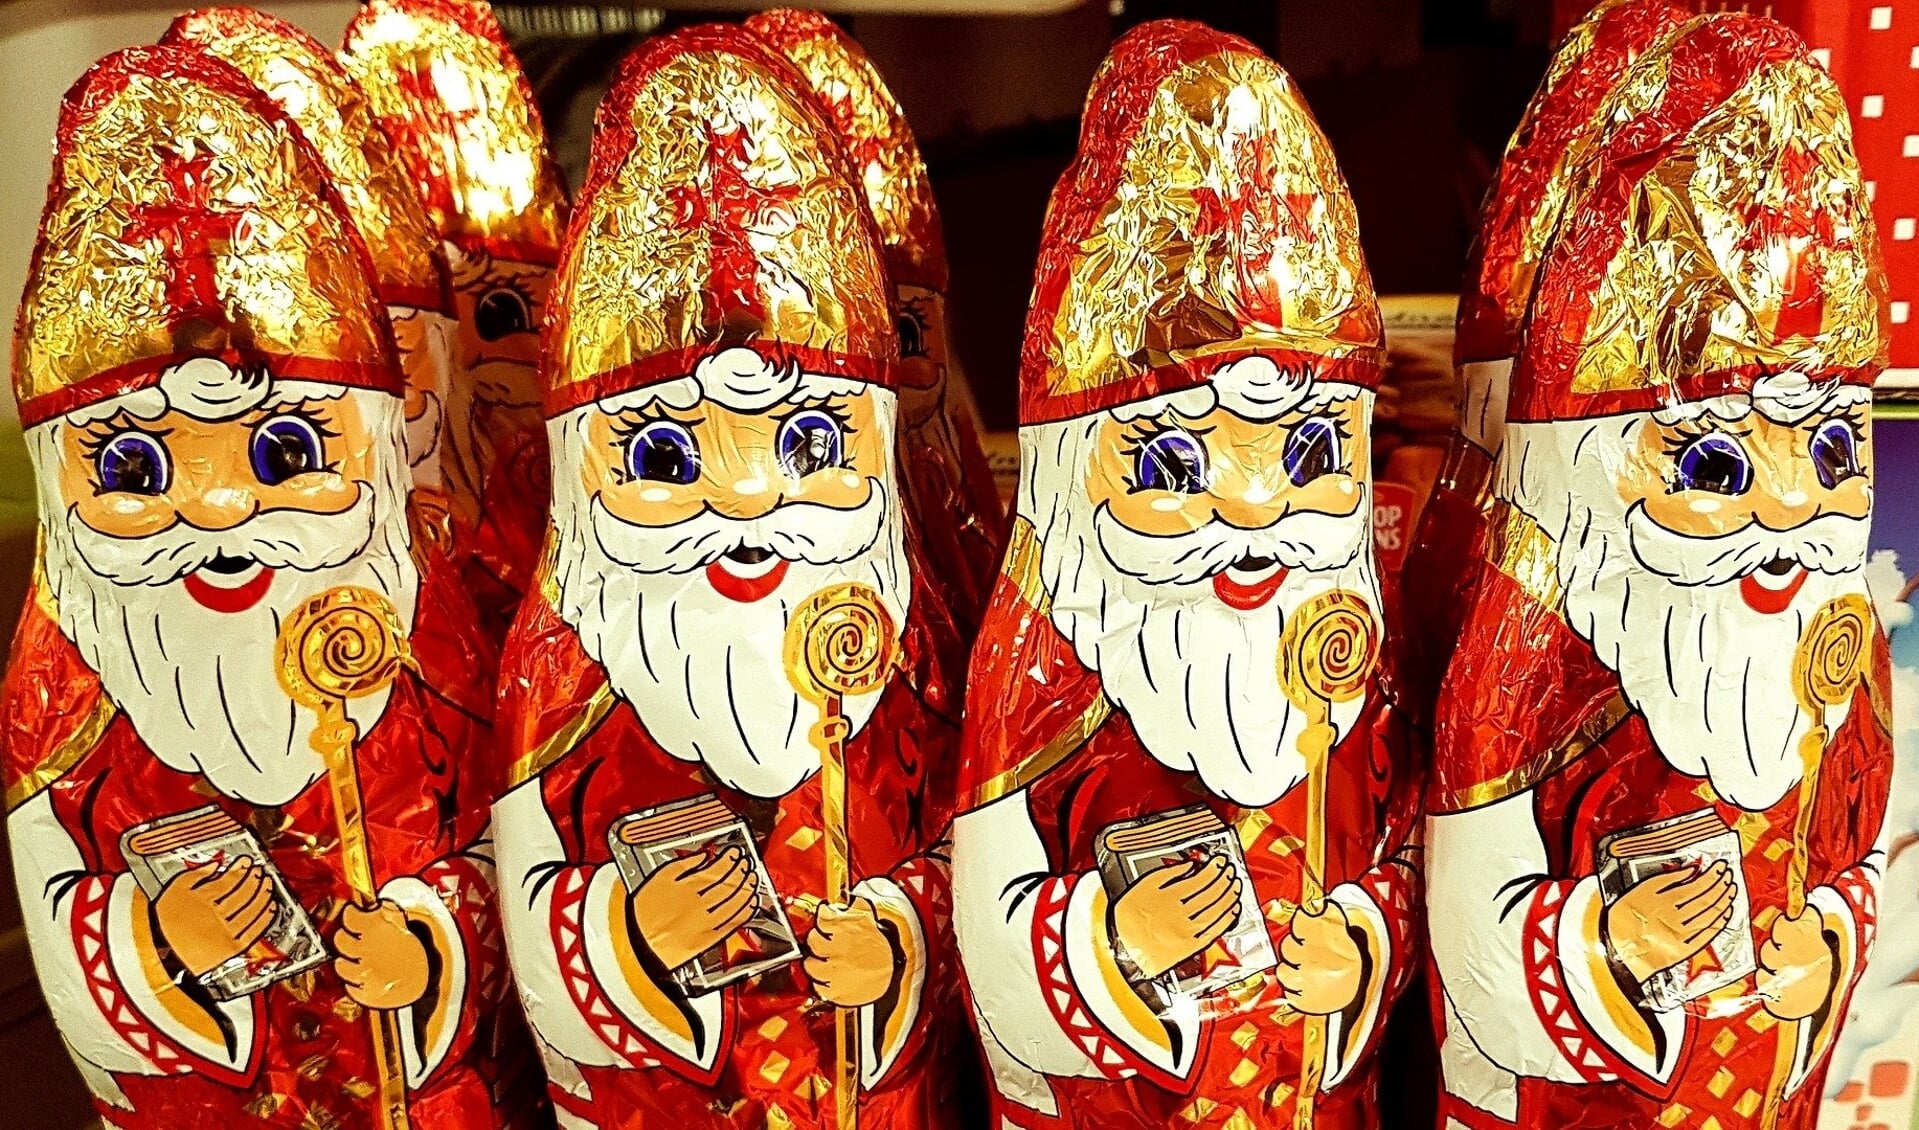 Sinterklaas wil voor iedereen cadeaus blijven brengen, maar zal dat wel lukken? 